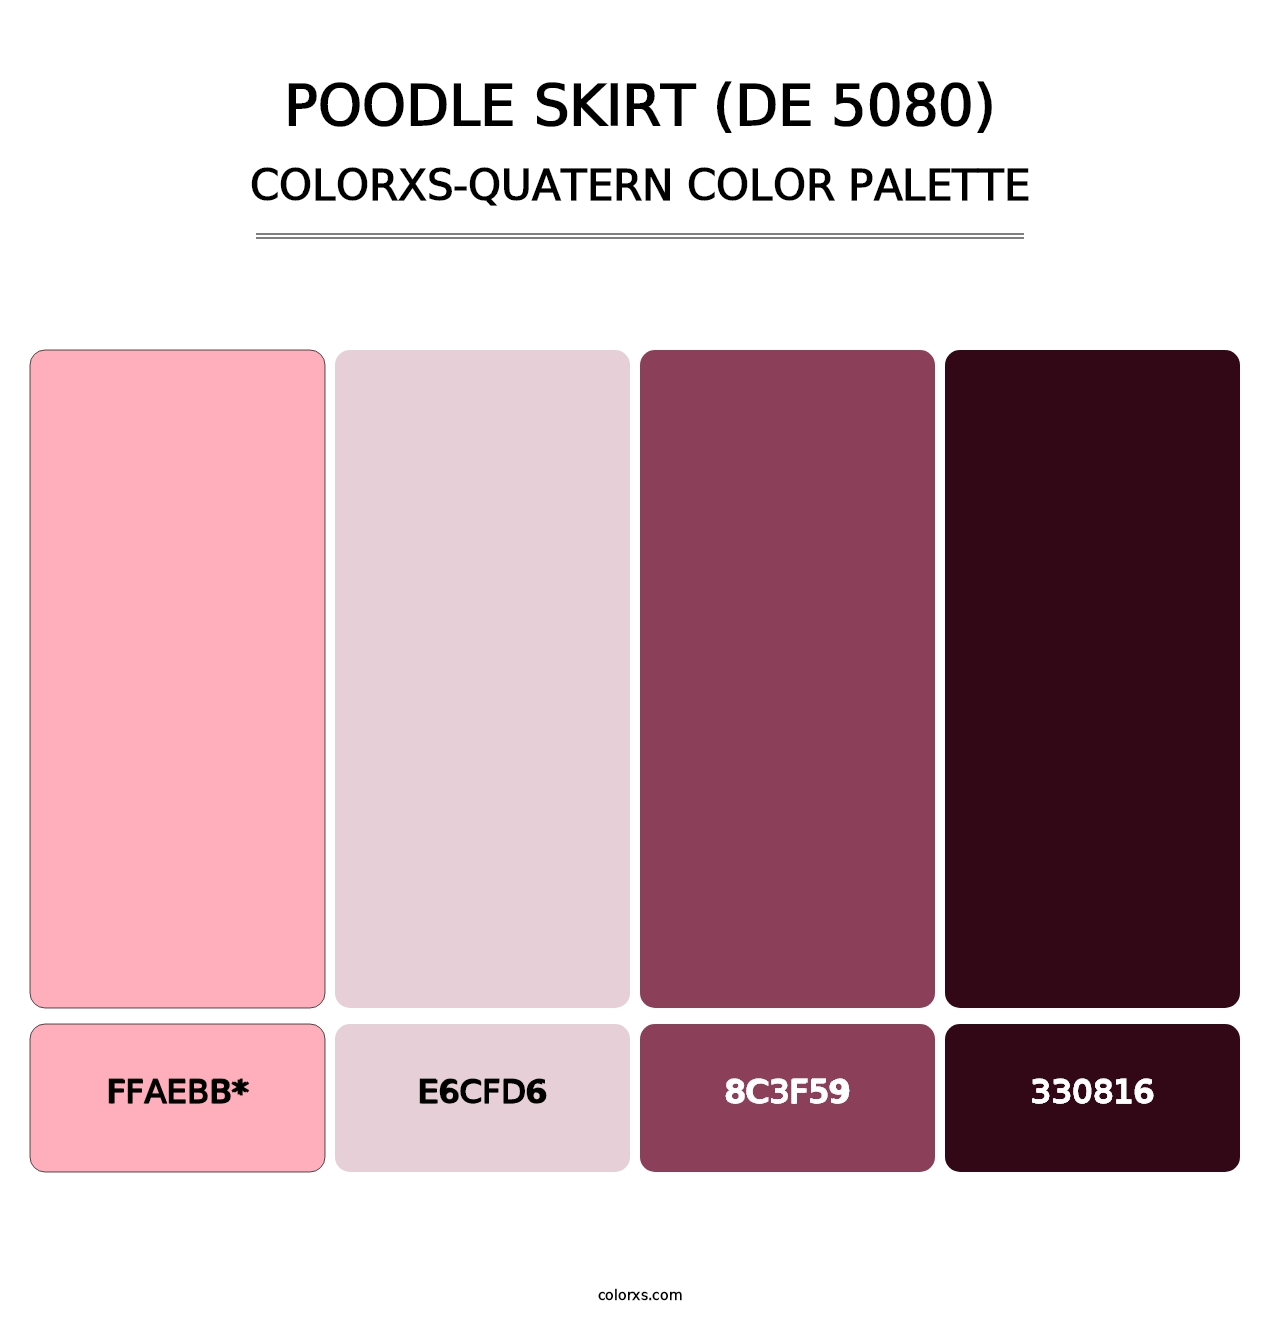 Poodle Skirt (DE 5080) - Colorxs Quatern Palette